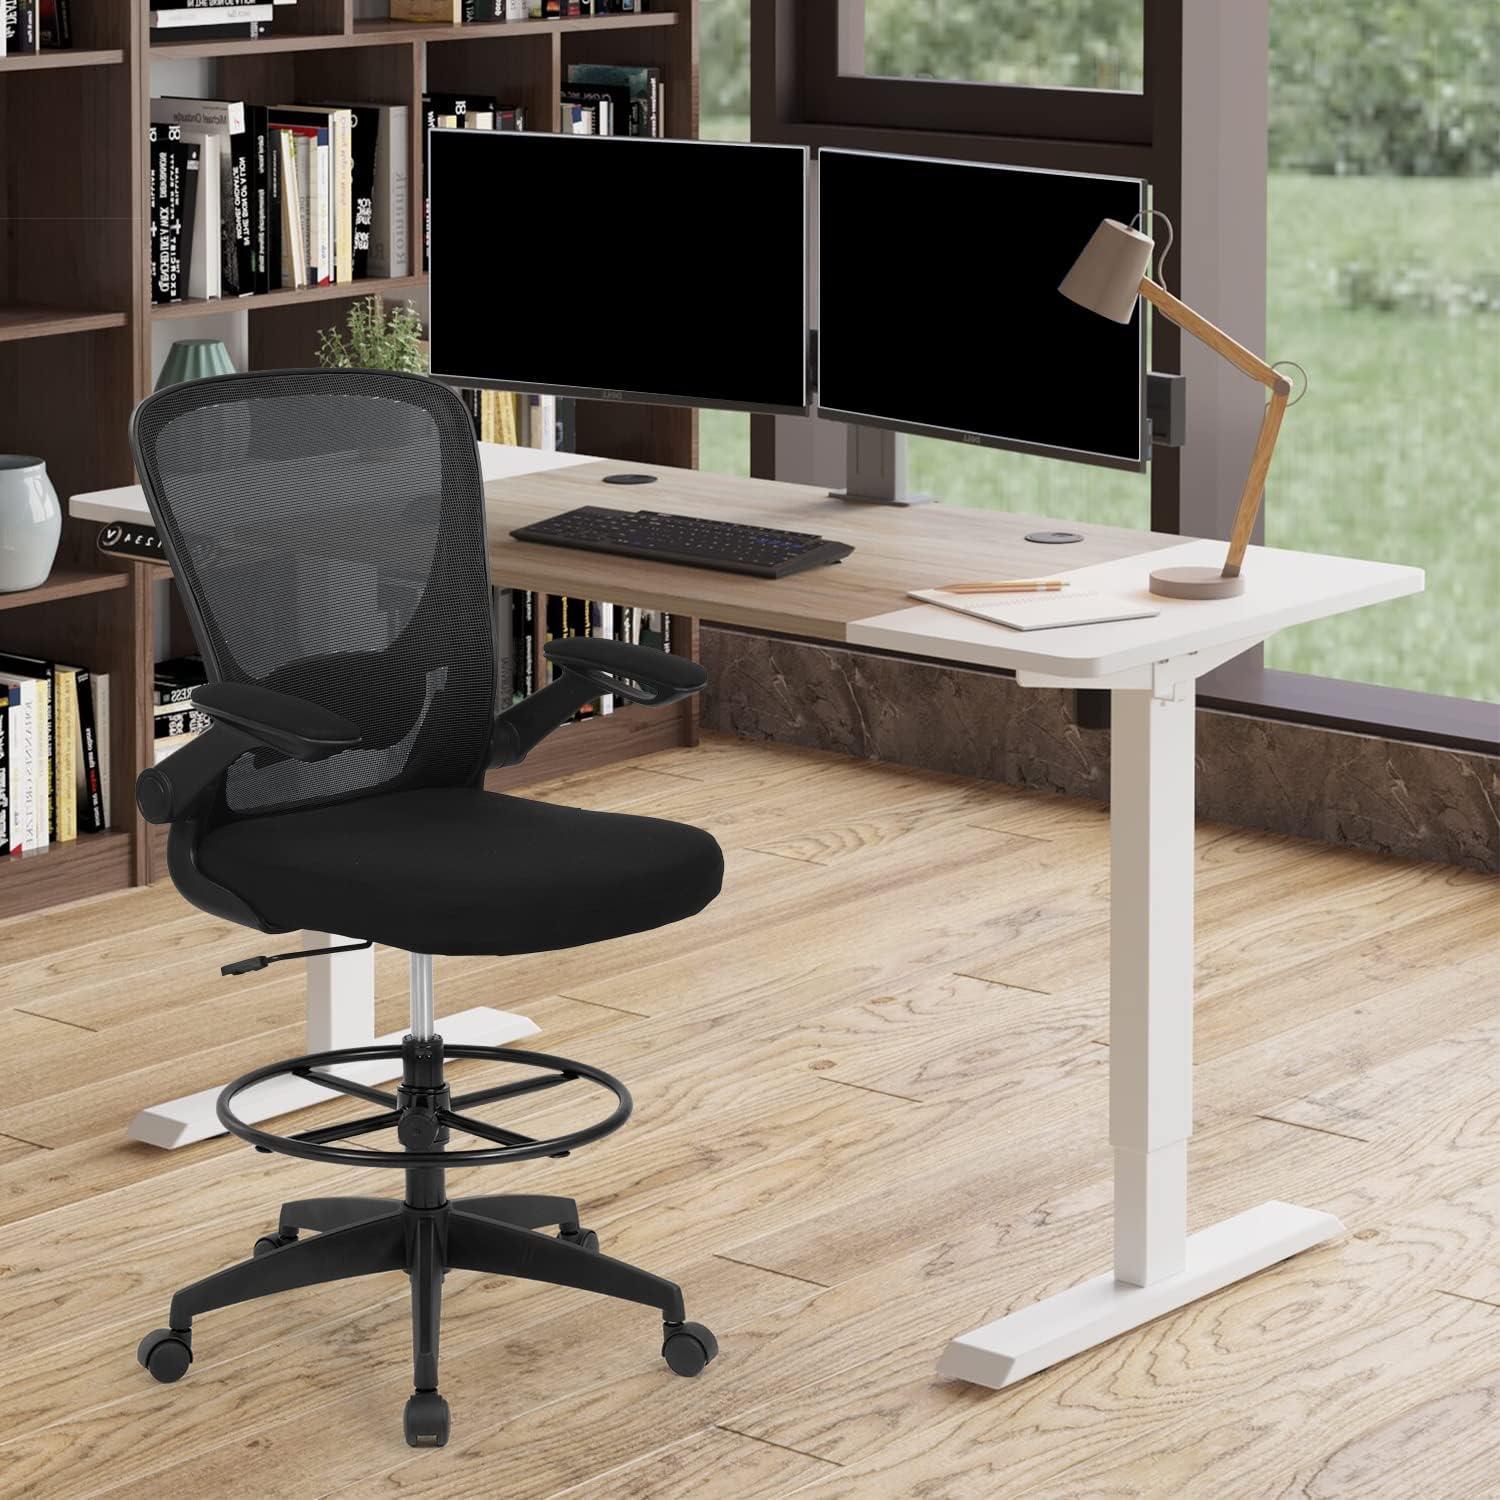 Standing Desk Chair with Adjustable Foot Ring and Flip-up Armrests (Black) - Furniture4Design